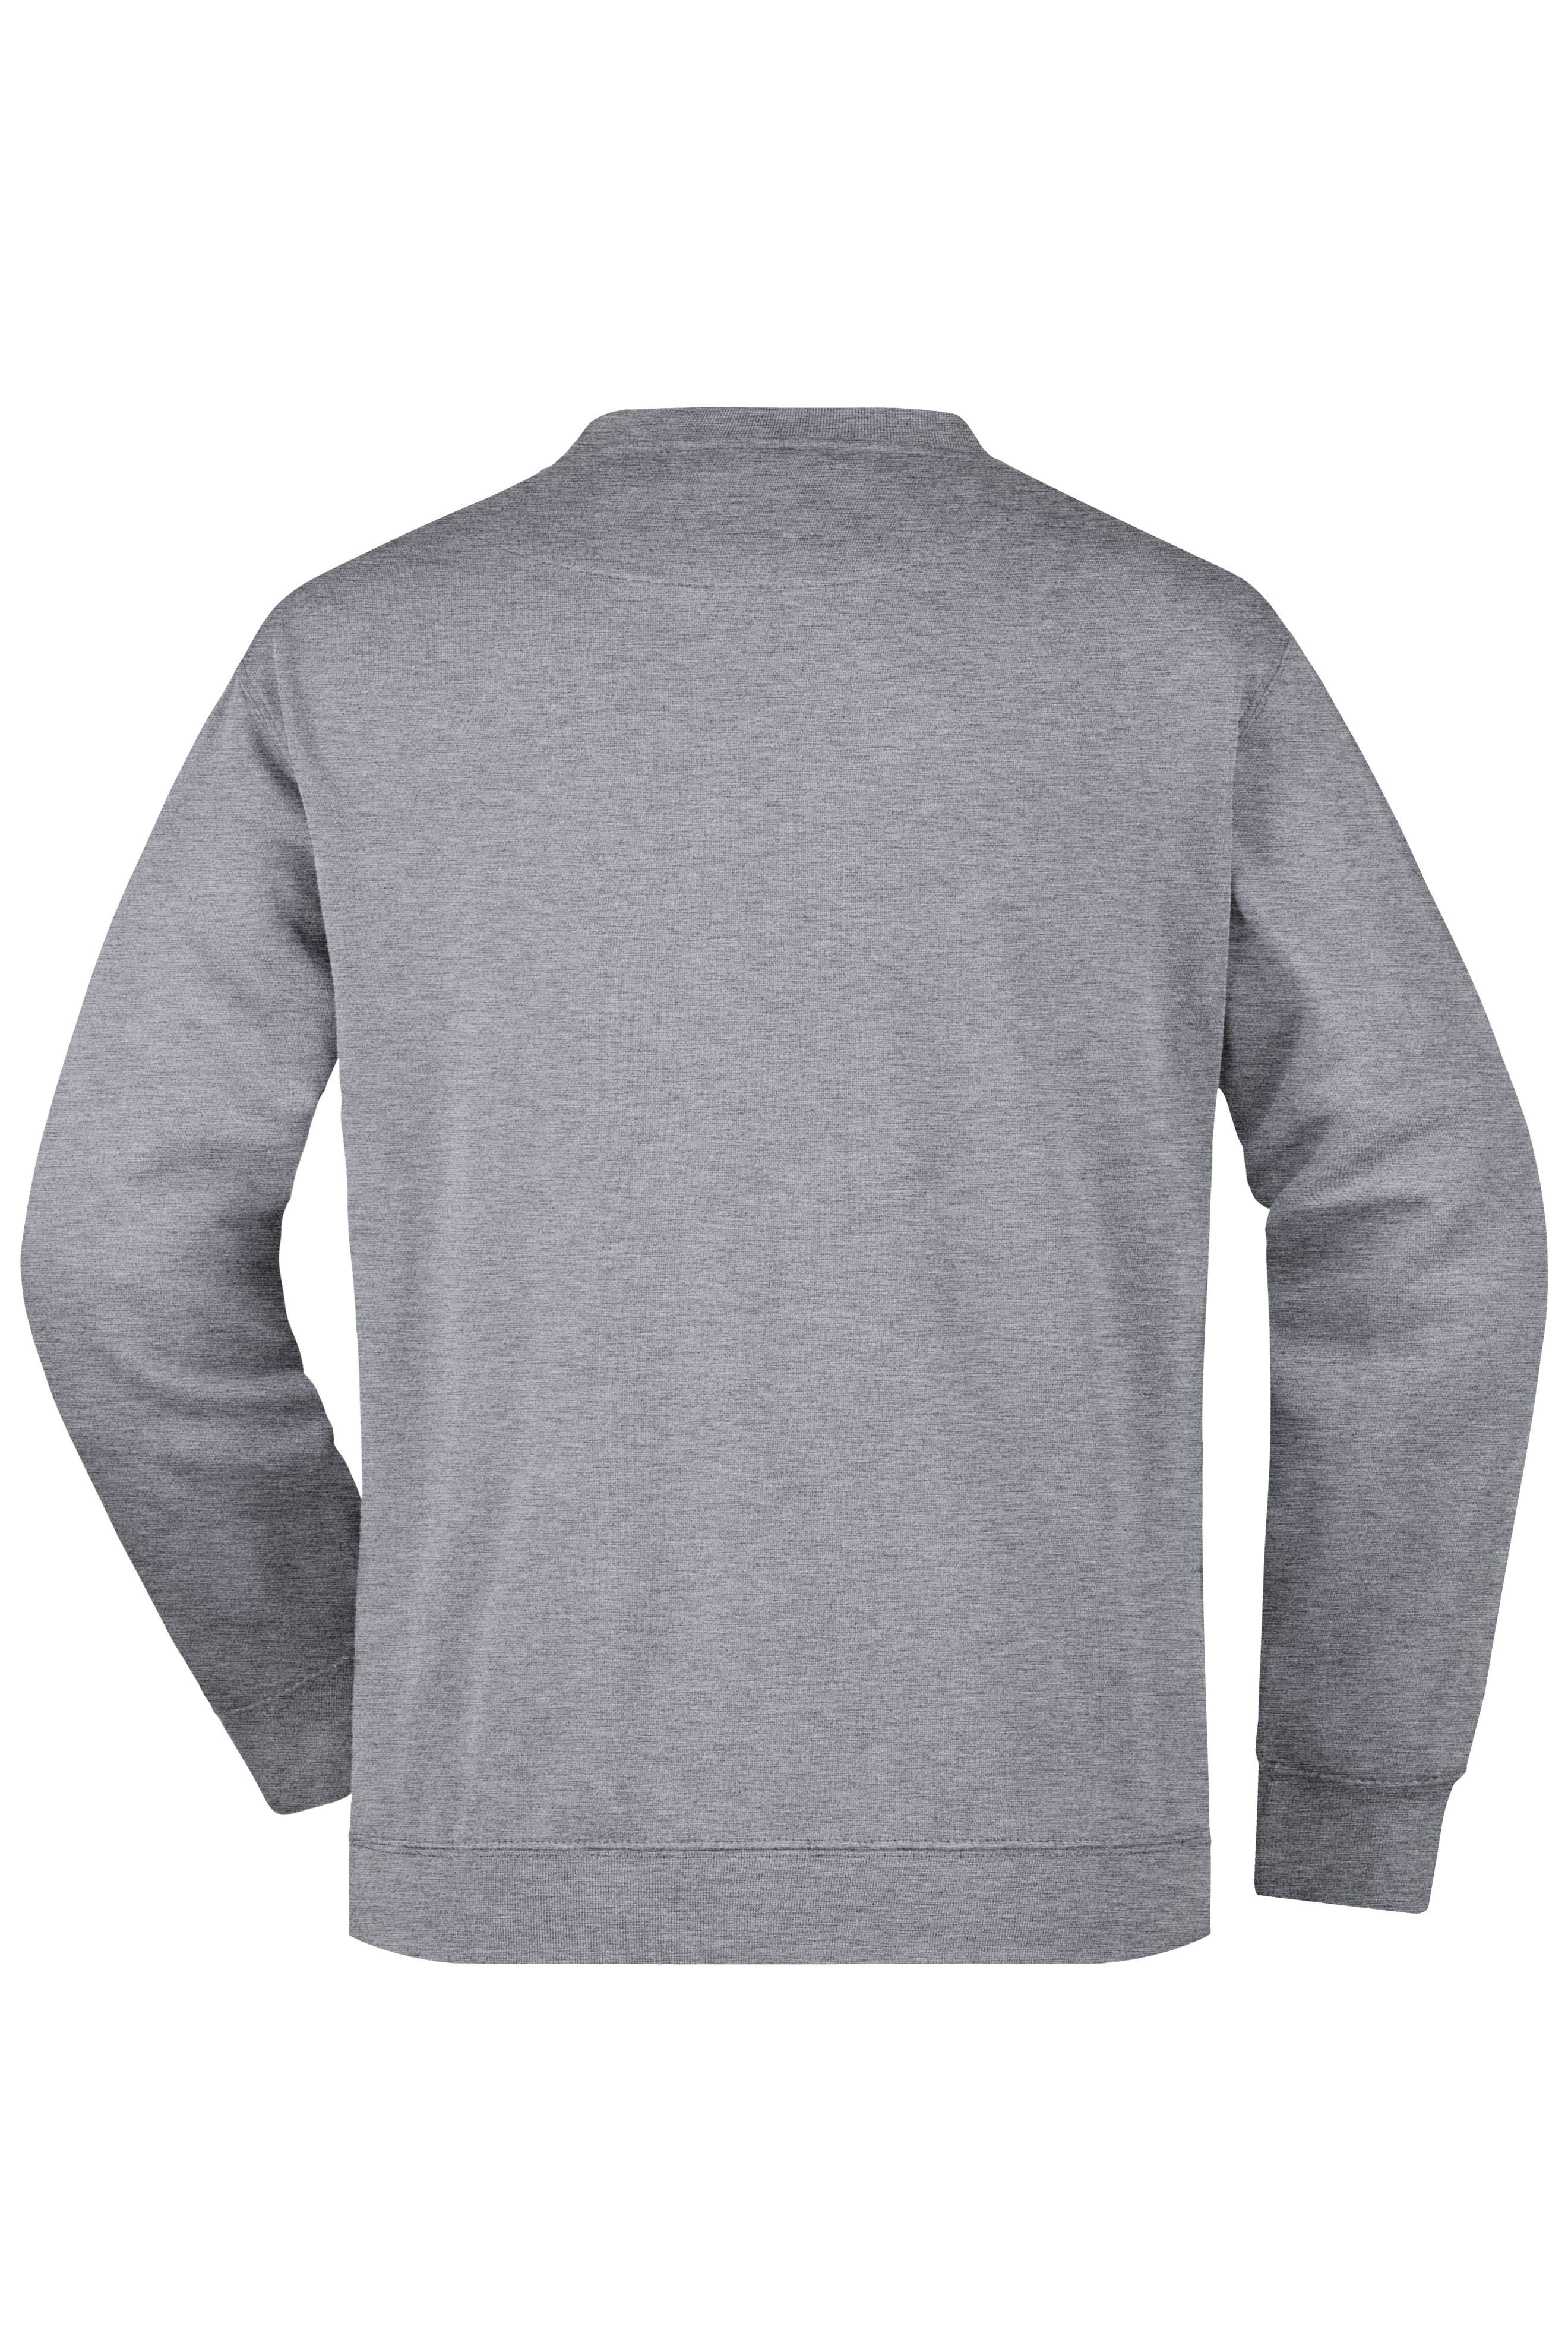 JN924 Sweatshirt mit Nicholson Sweatshirt James & Pullover grey-heather Brusttasche